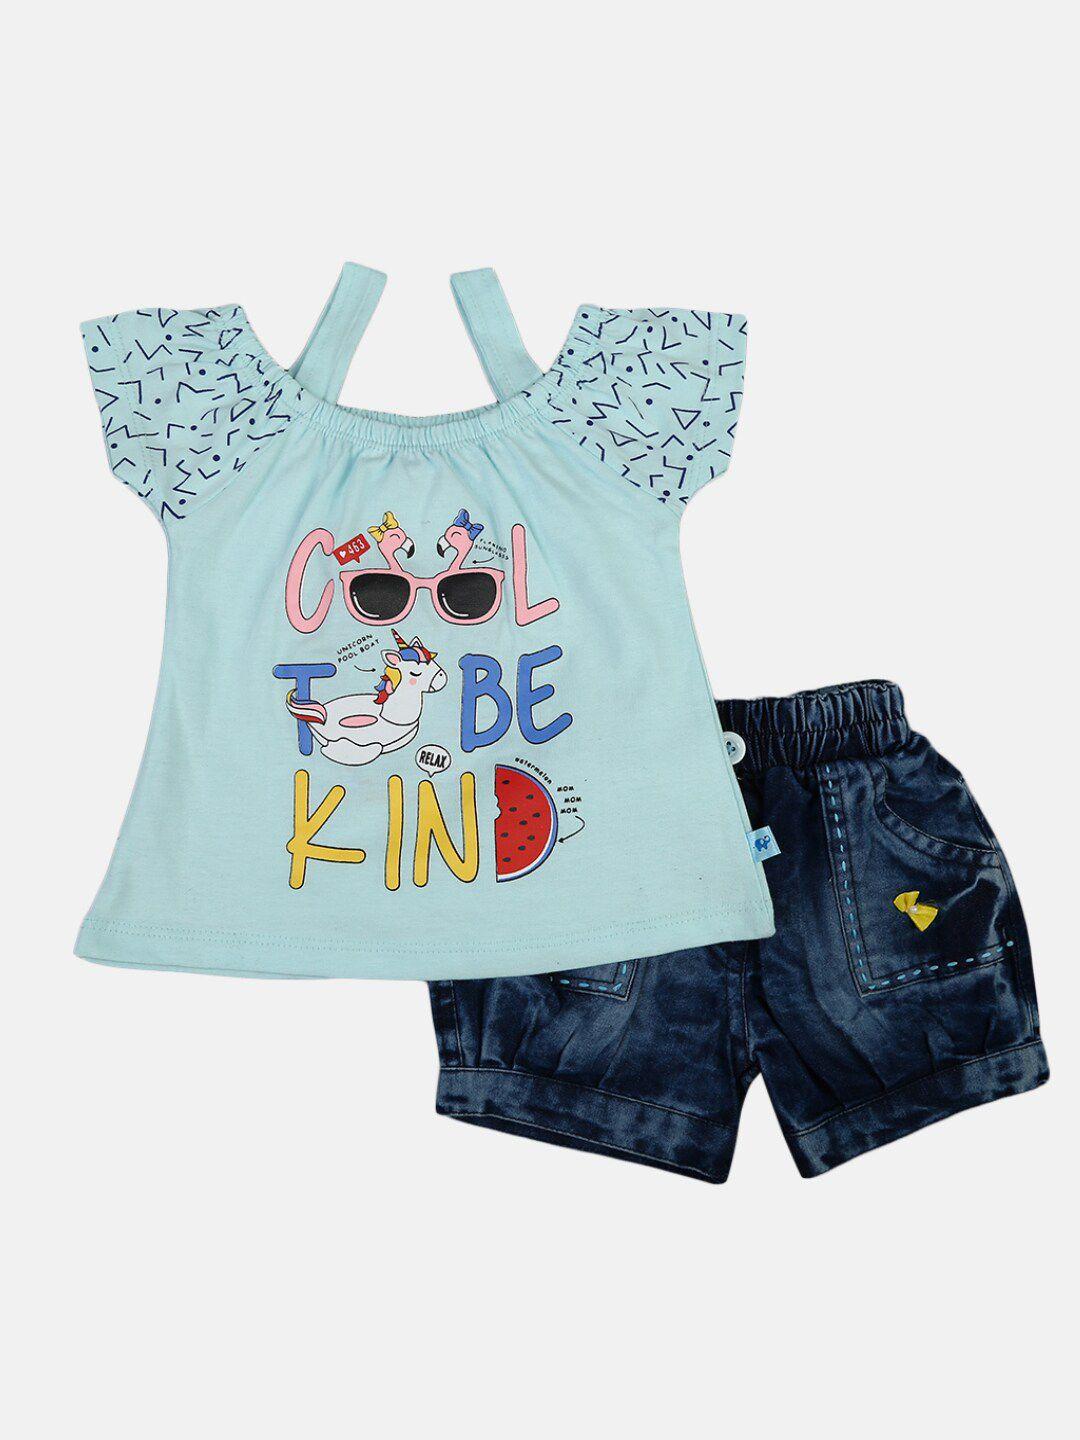 V-Mart Unisex Kids Blue & Pink Printed Top with Denim Shorts